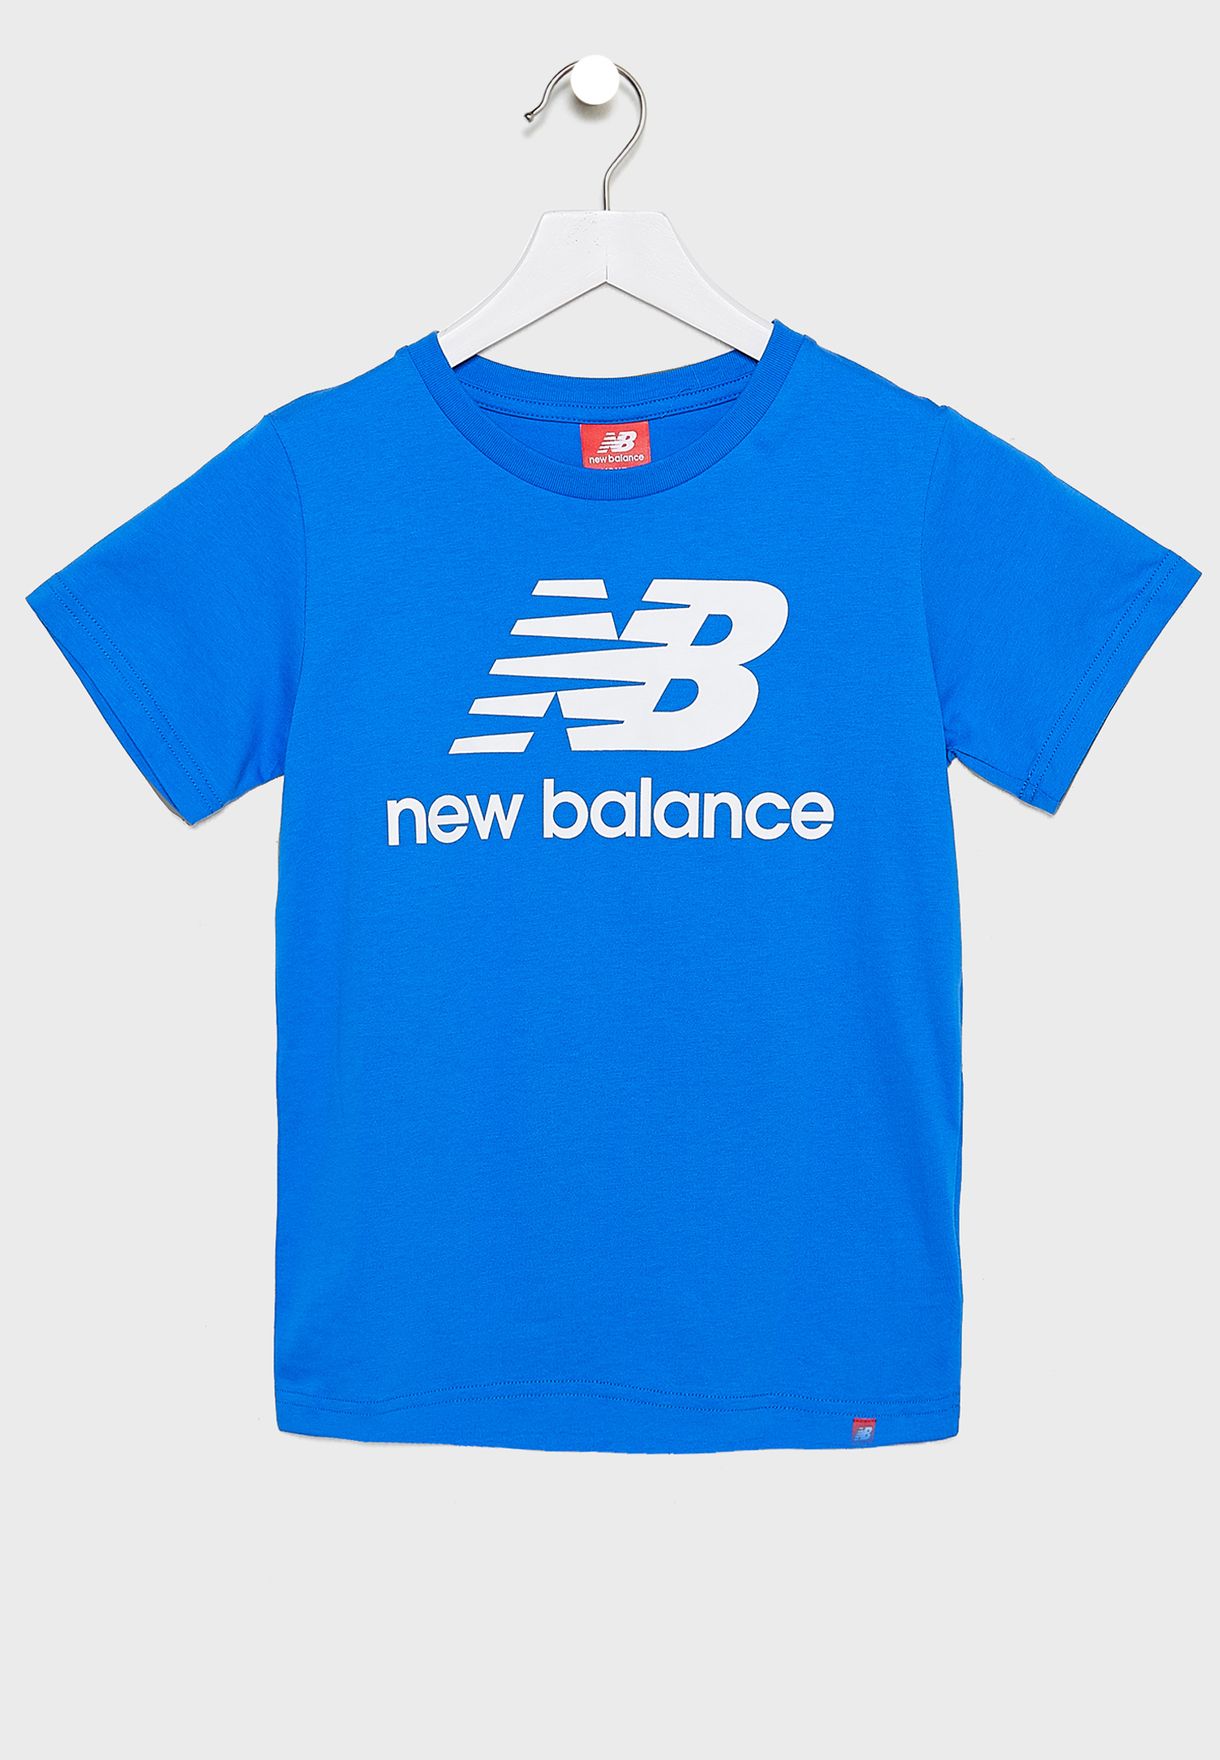 new balance blue shirt